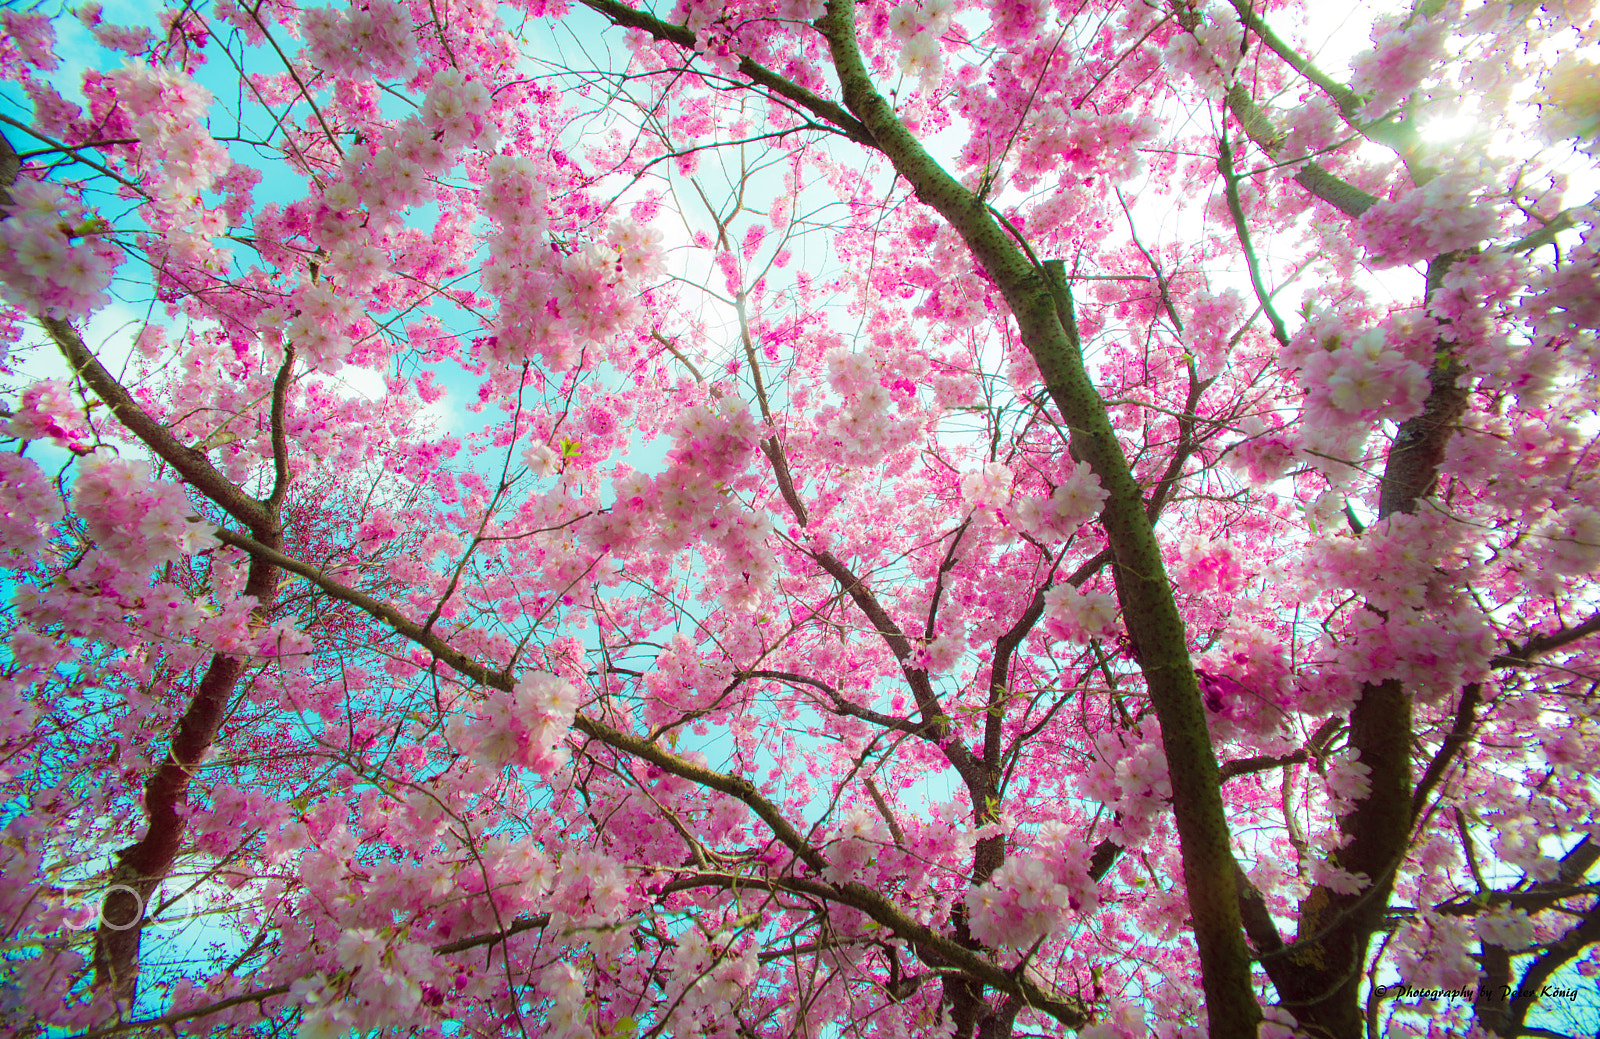 Nikon D600 sample photo. Beautiful spring photography